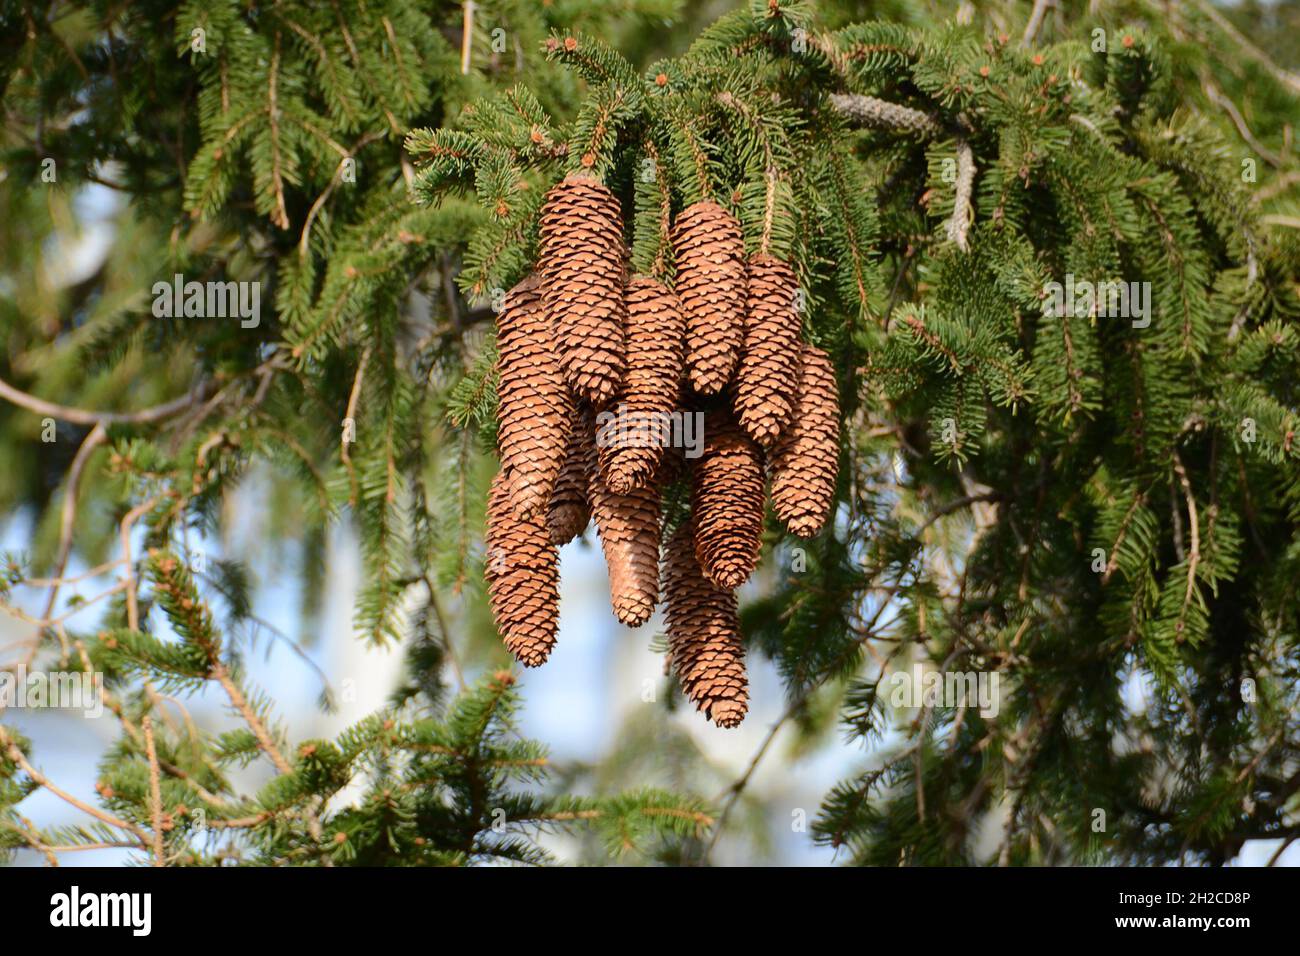 Zapfen eines Fichtenbaumes im Salzkammergut (Österreich) - Cones of a spruce tree in the Salzkammergut (Austria) Stock Photo